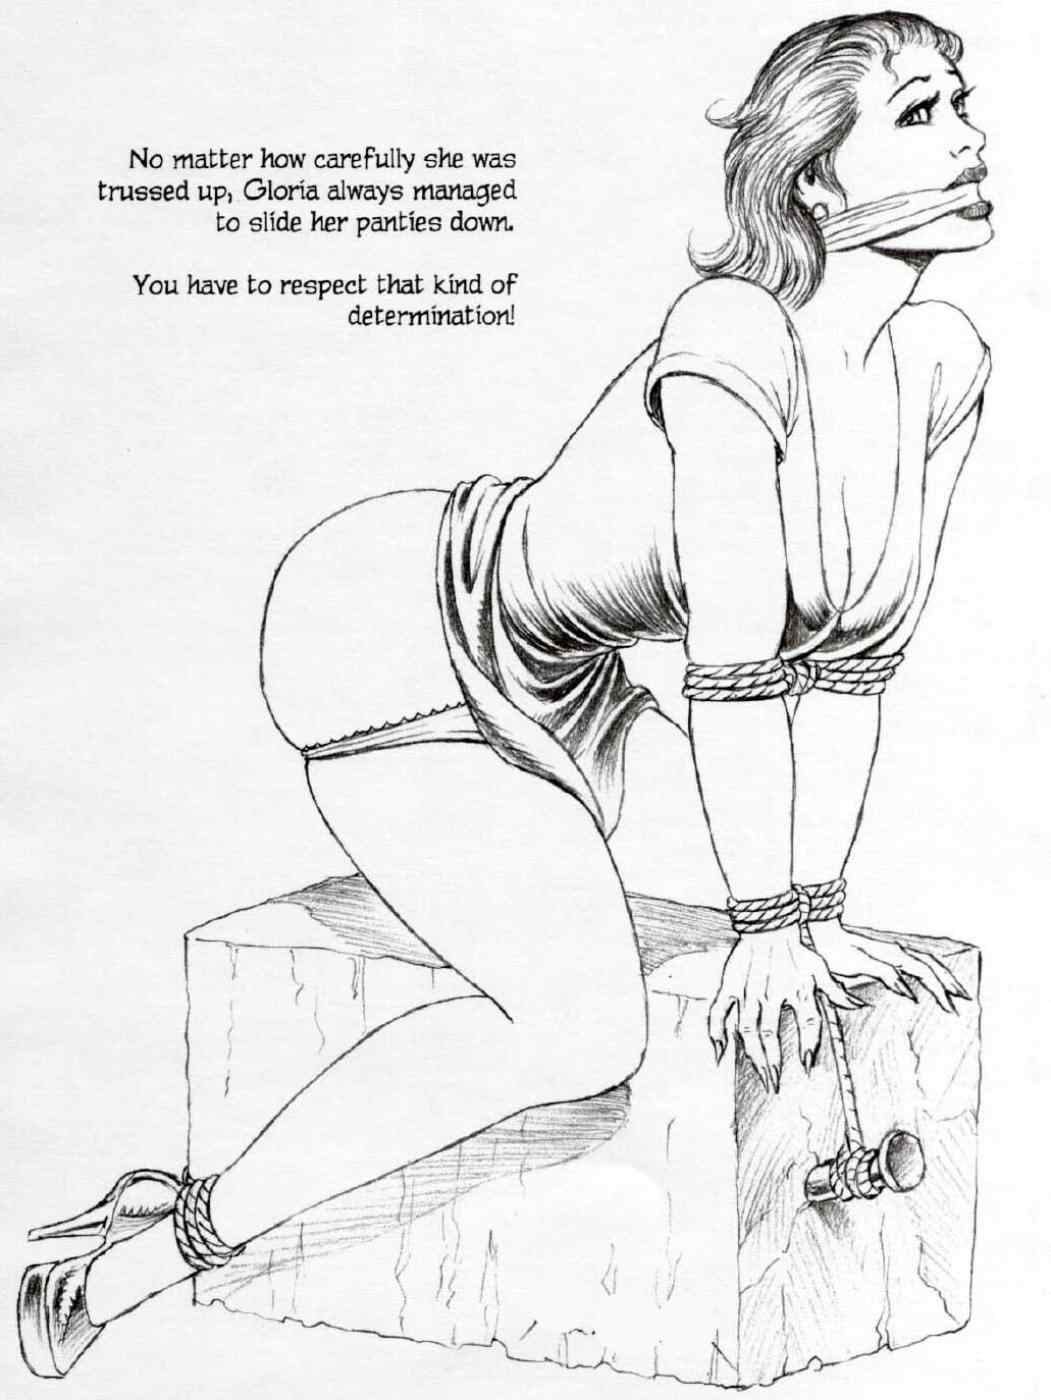 Sexy bondage drawings of women